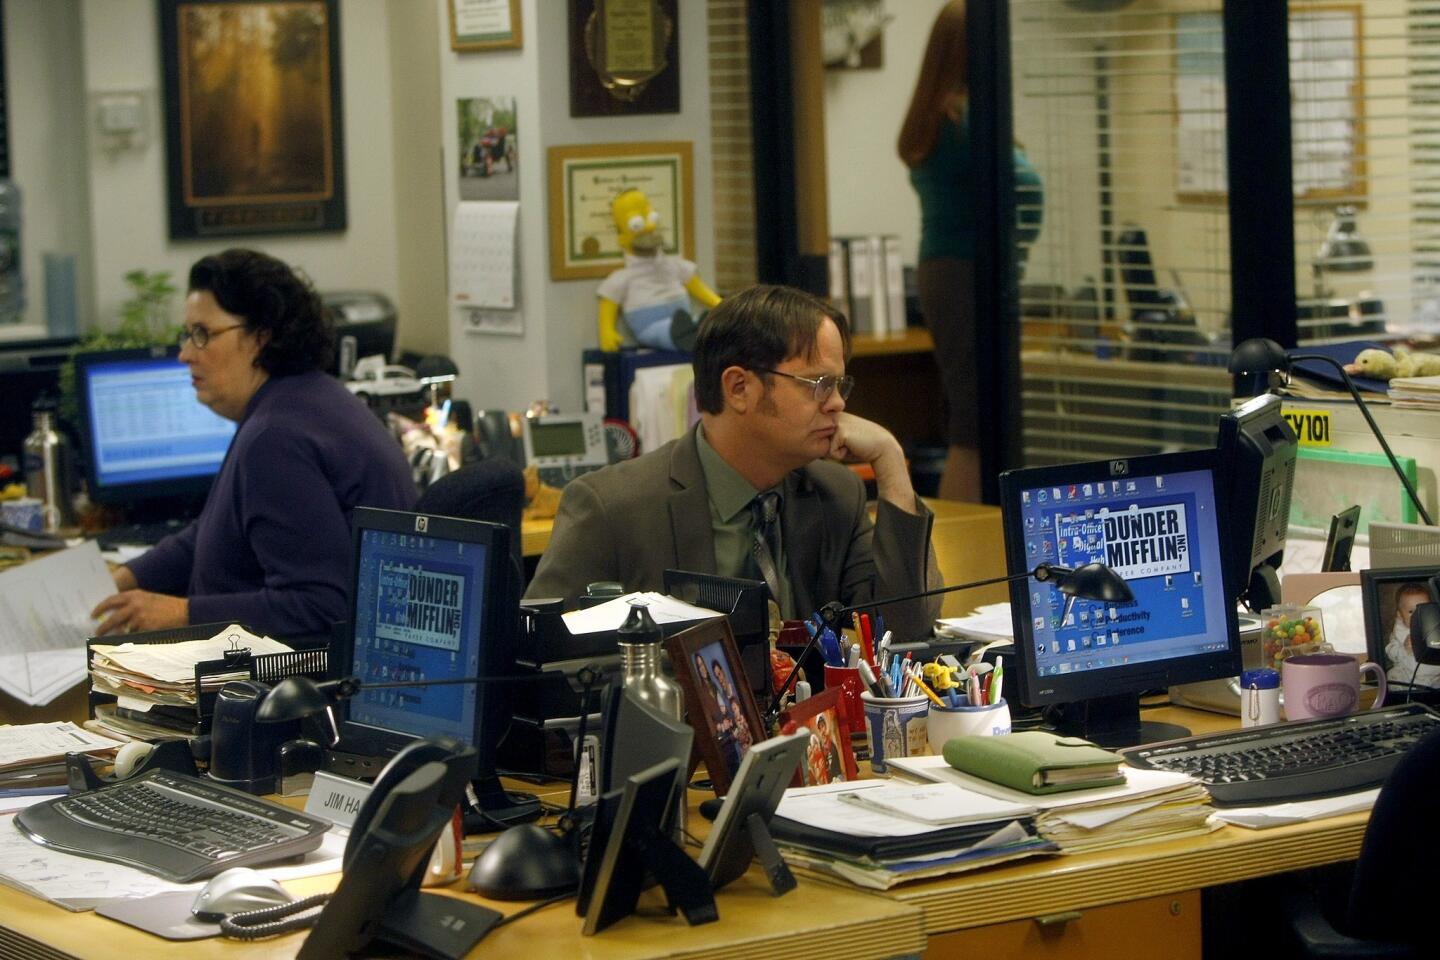 The Office Series Finale Watch: Farewell, Dunder Mifflin